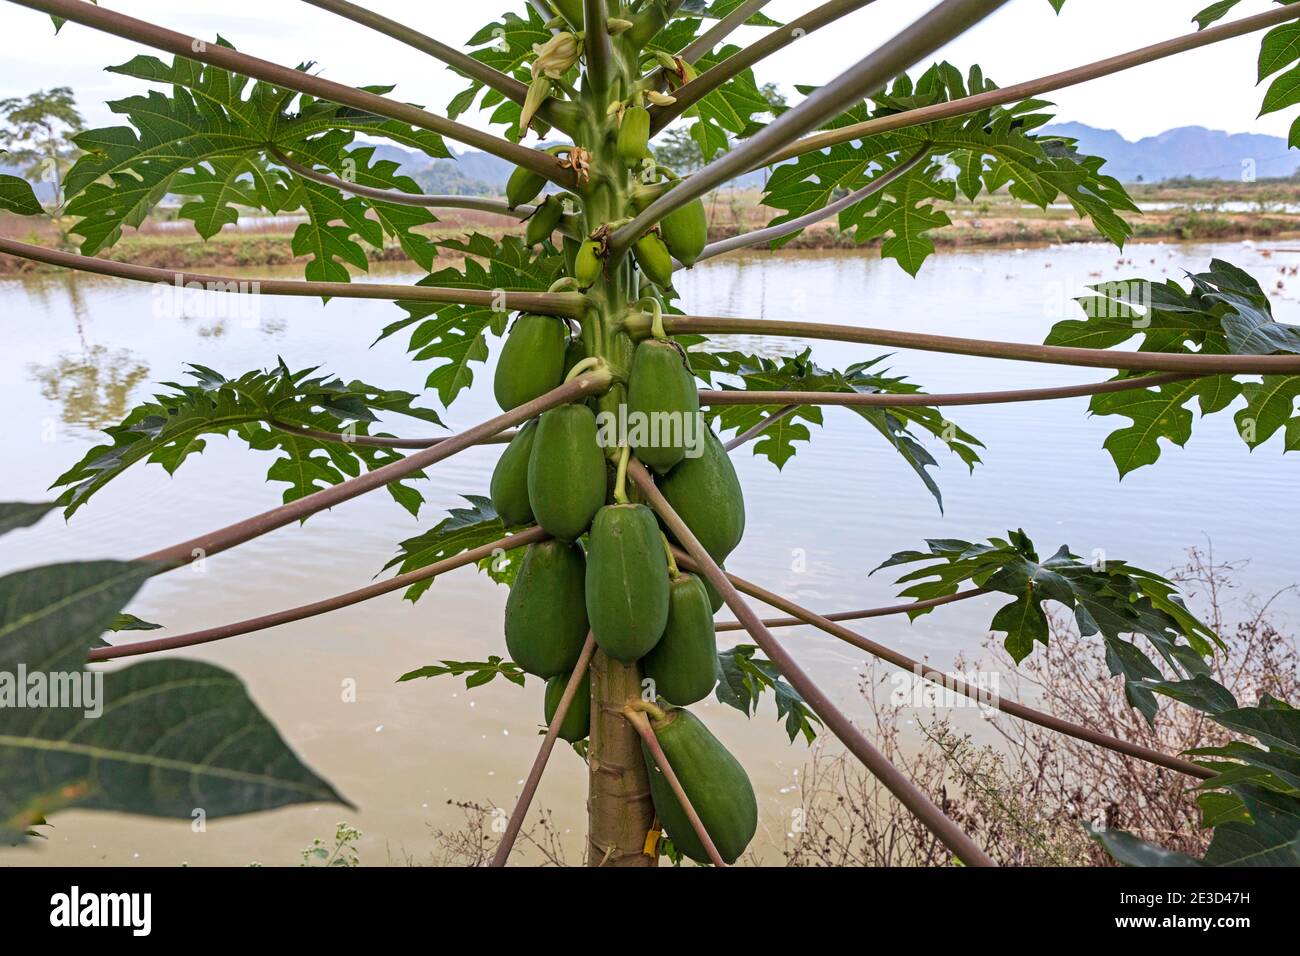 Green, unripe papayas growing on papaya tree (Carica papaya) in Vietnam Stock Photo